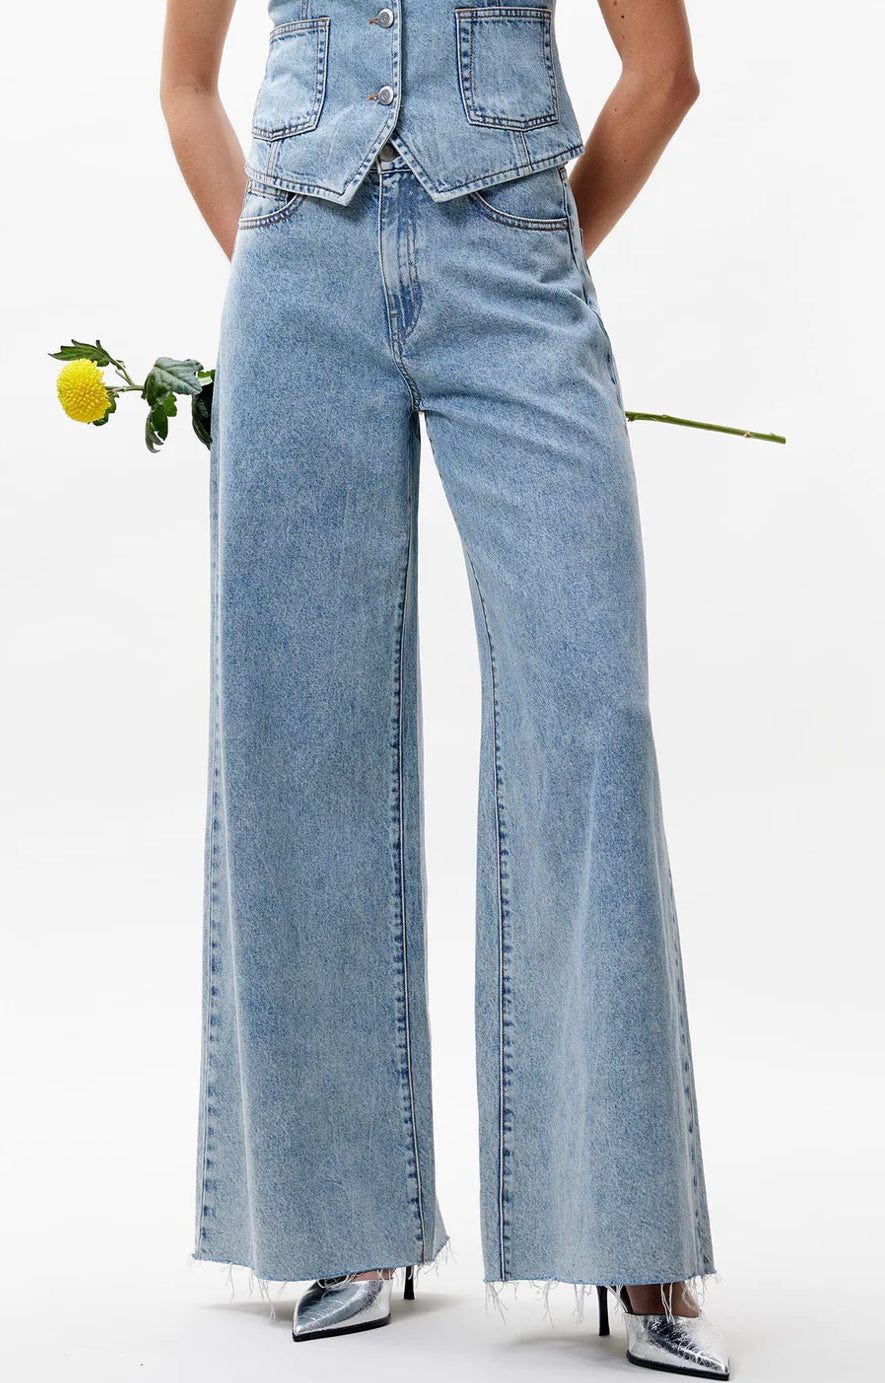 Catwalk Junkie Jeans Daisy